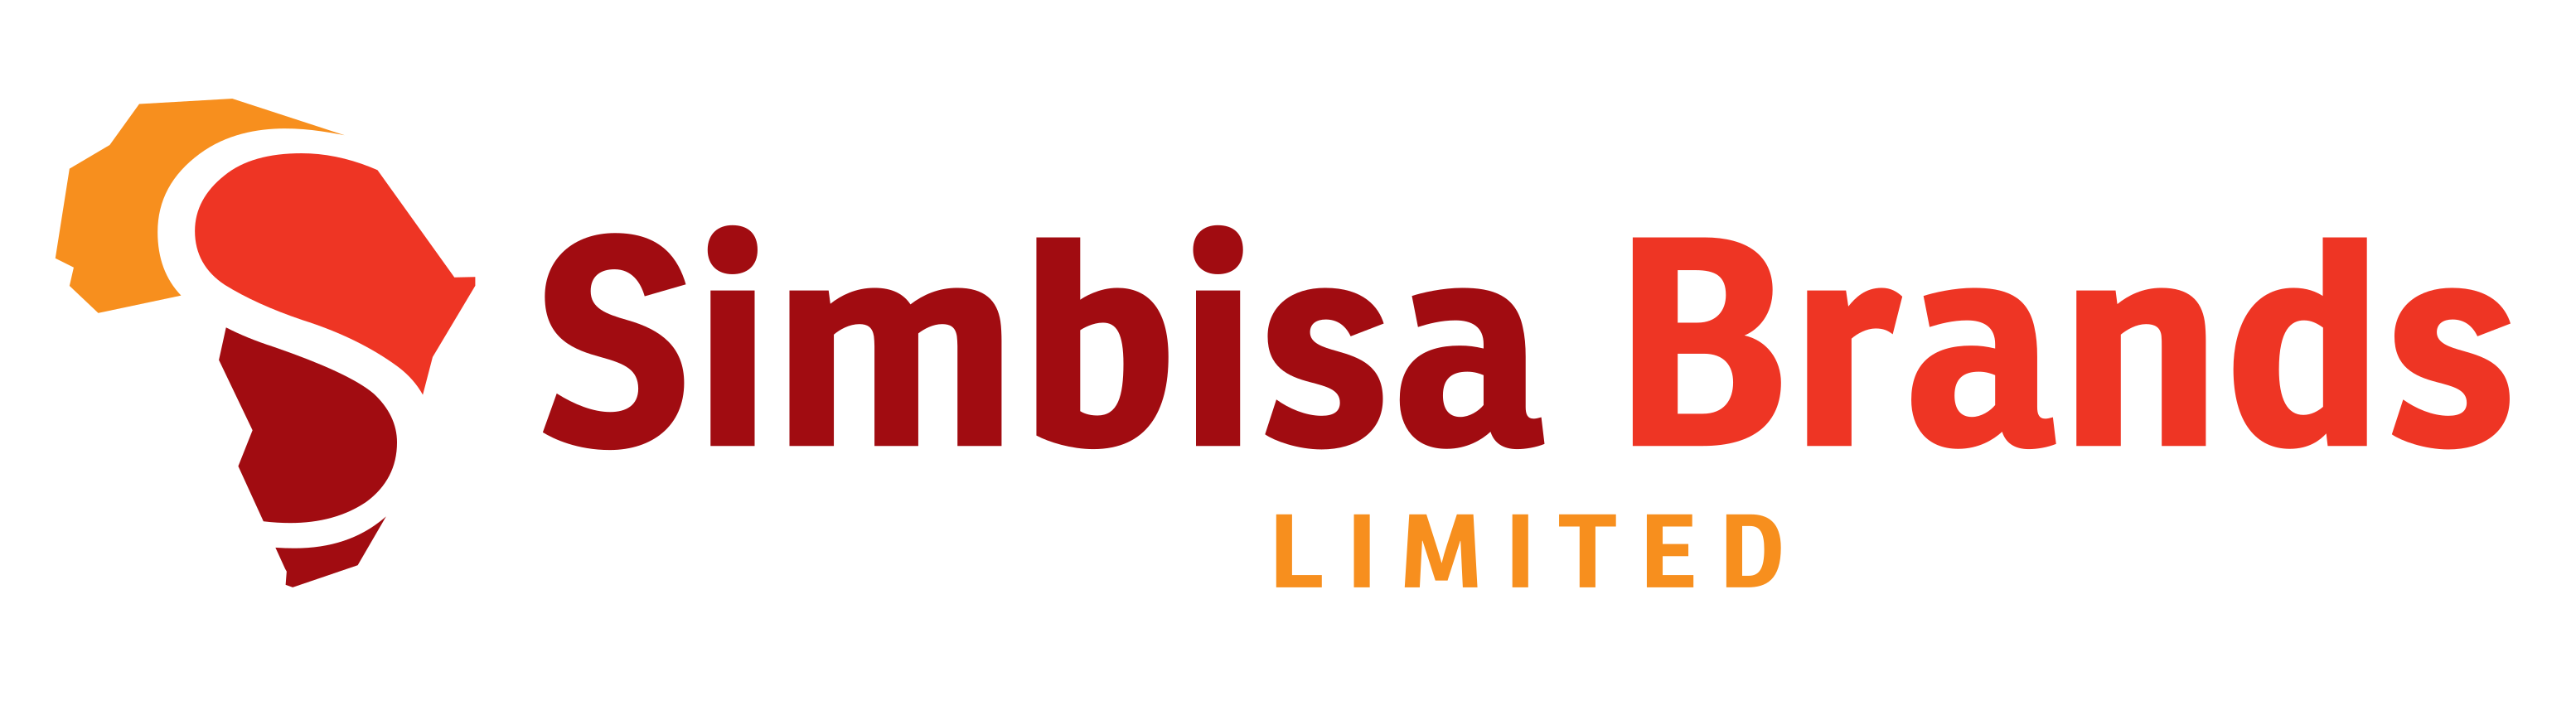 Simbisa_Brands_Logo